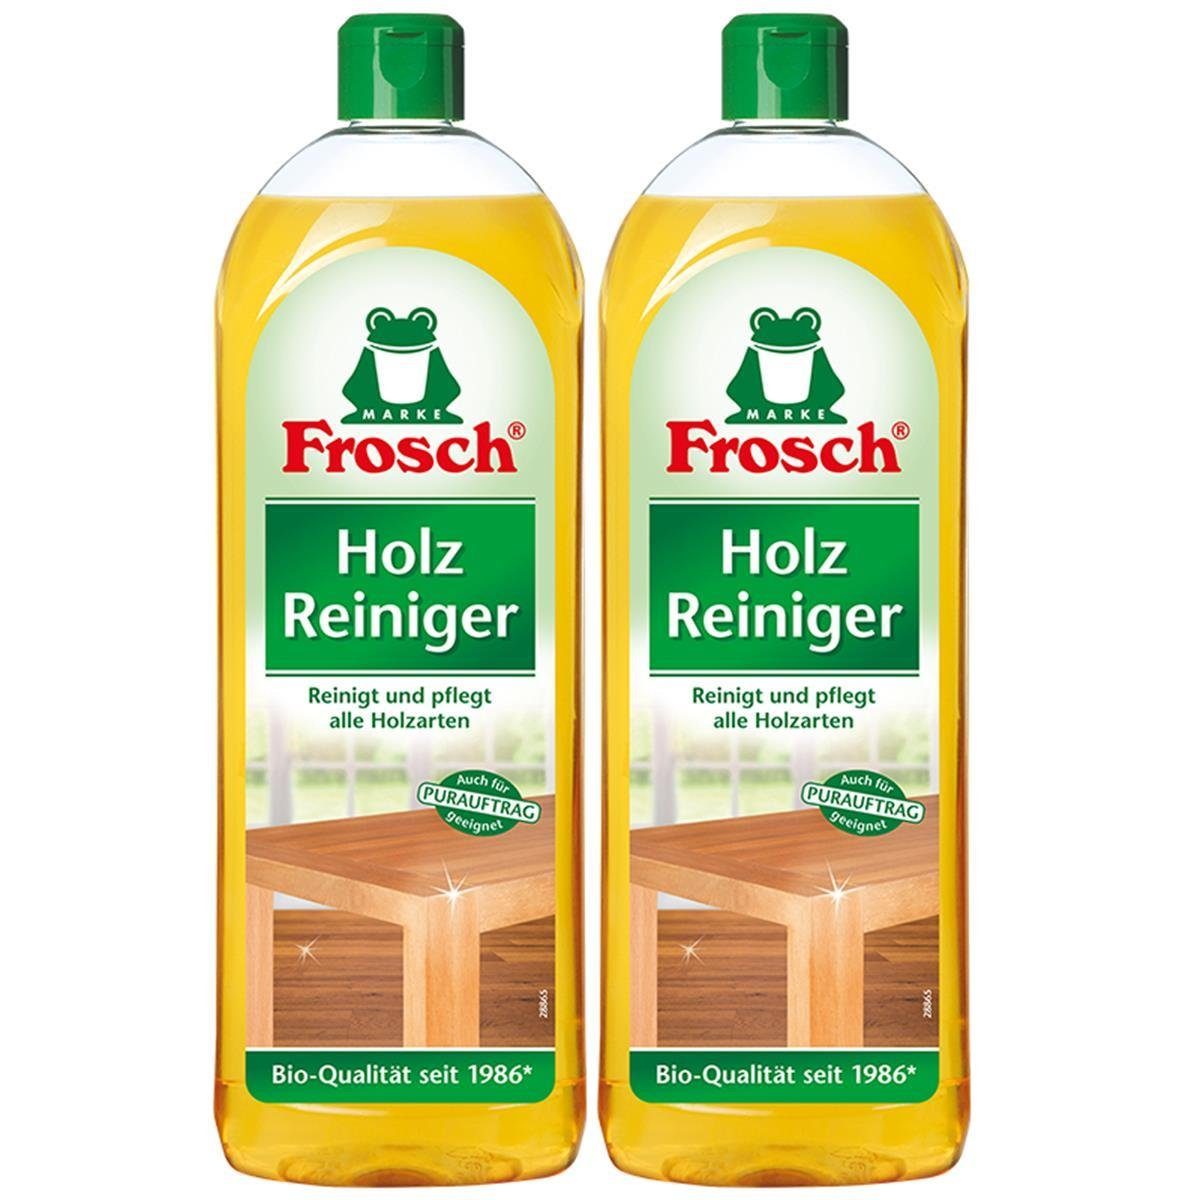 FROSCH 2x Frosch Holz Reiniger 750 ml – mit natürlichen Pflegewirkstoffen der Spezialwaschmittel